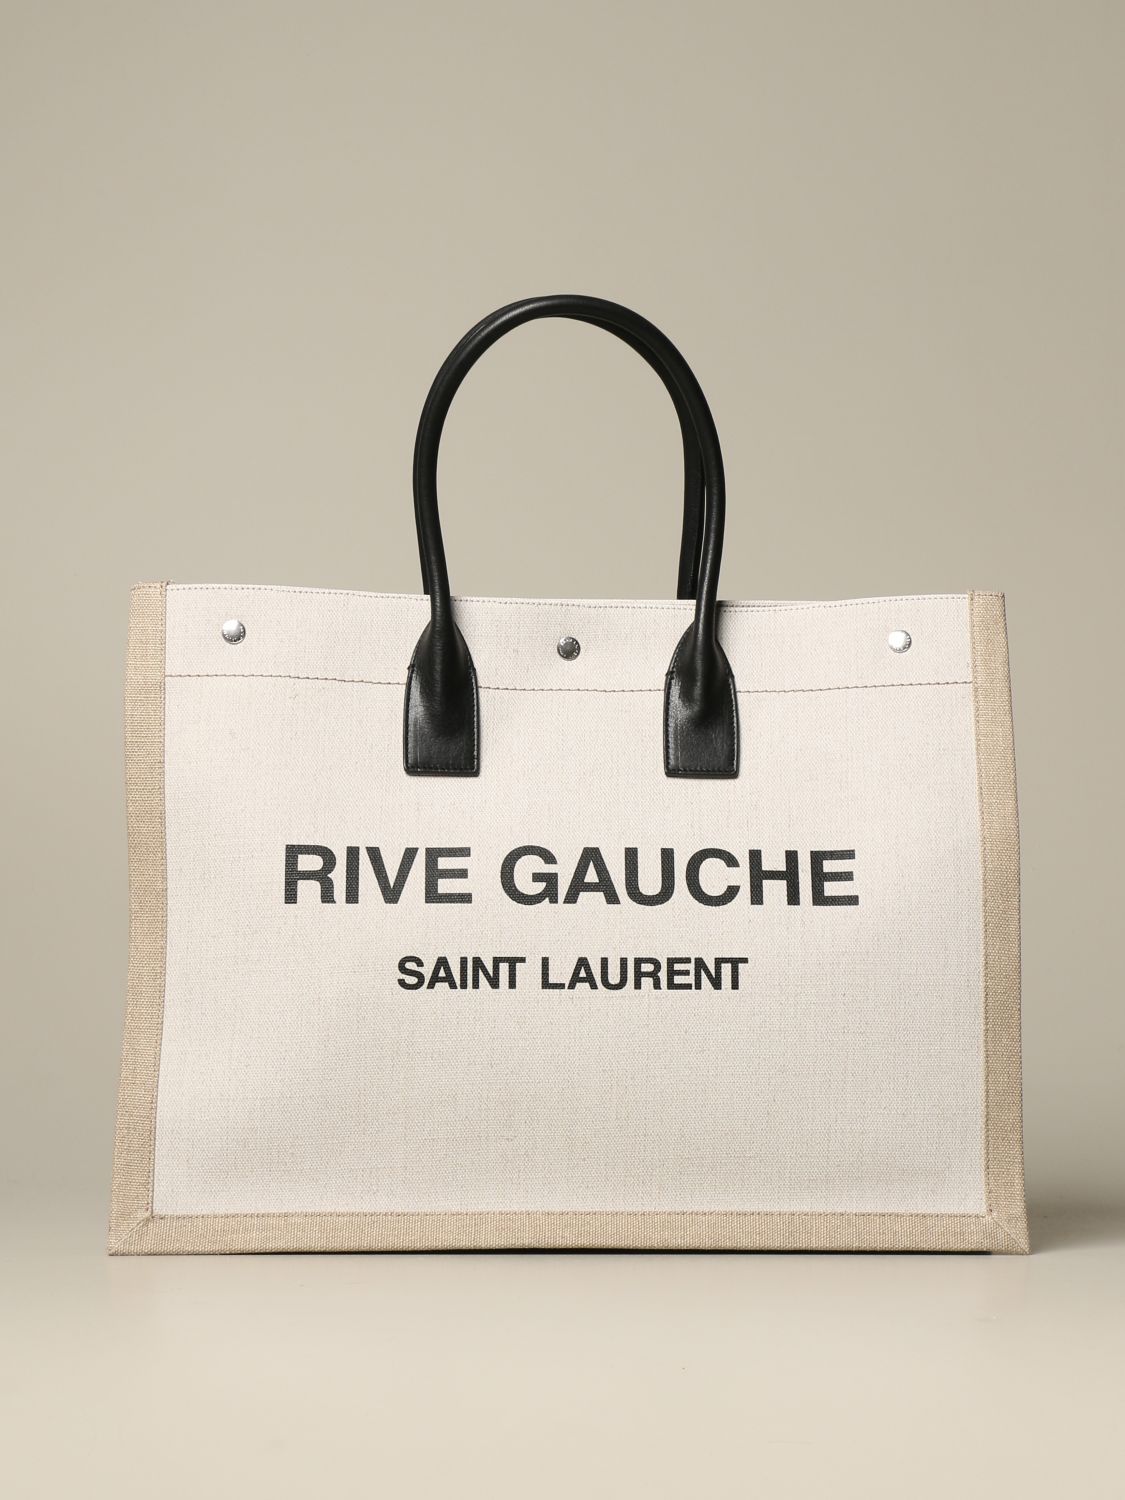 Saint Laurent Rive Gauche - Tote bag for Woman - Beige